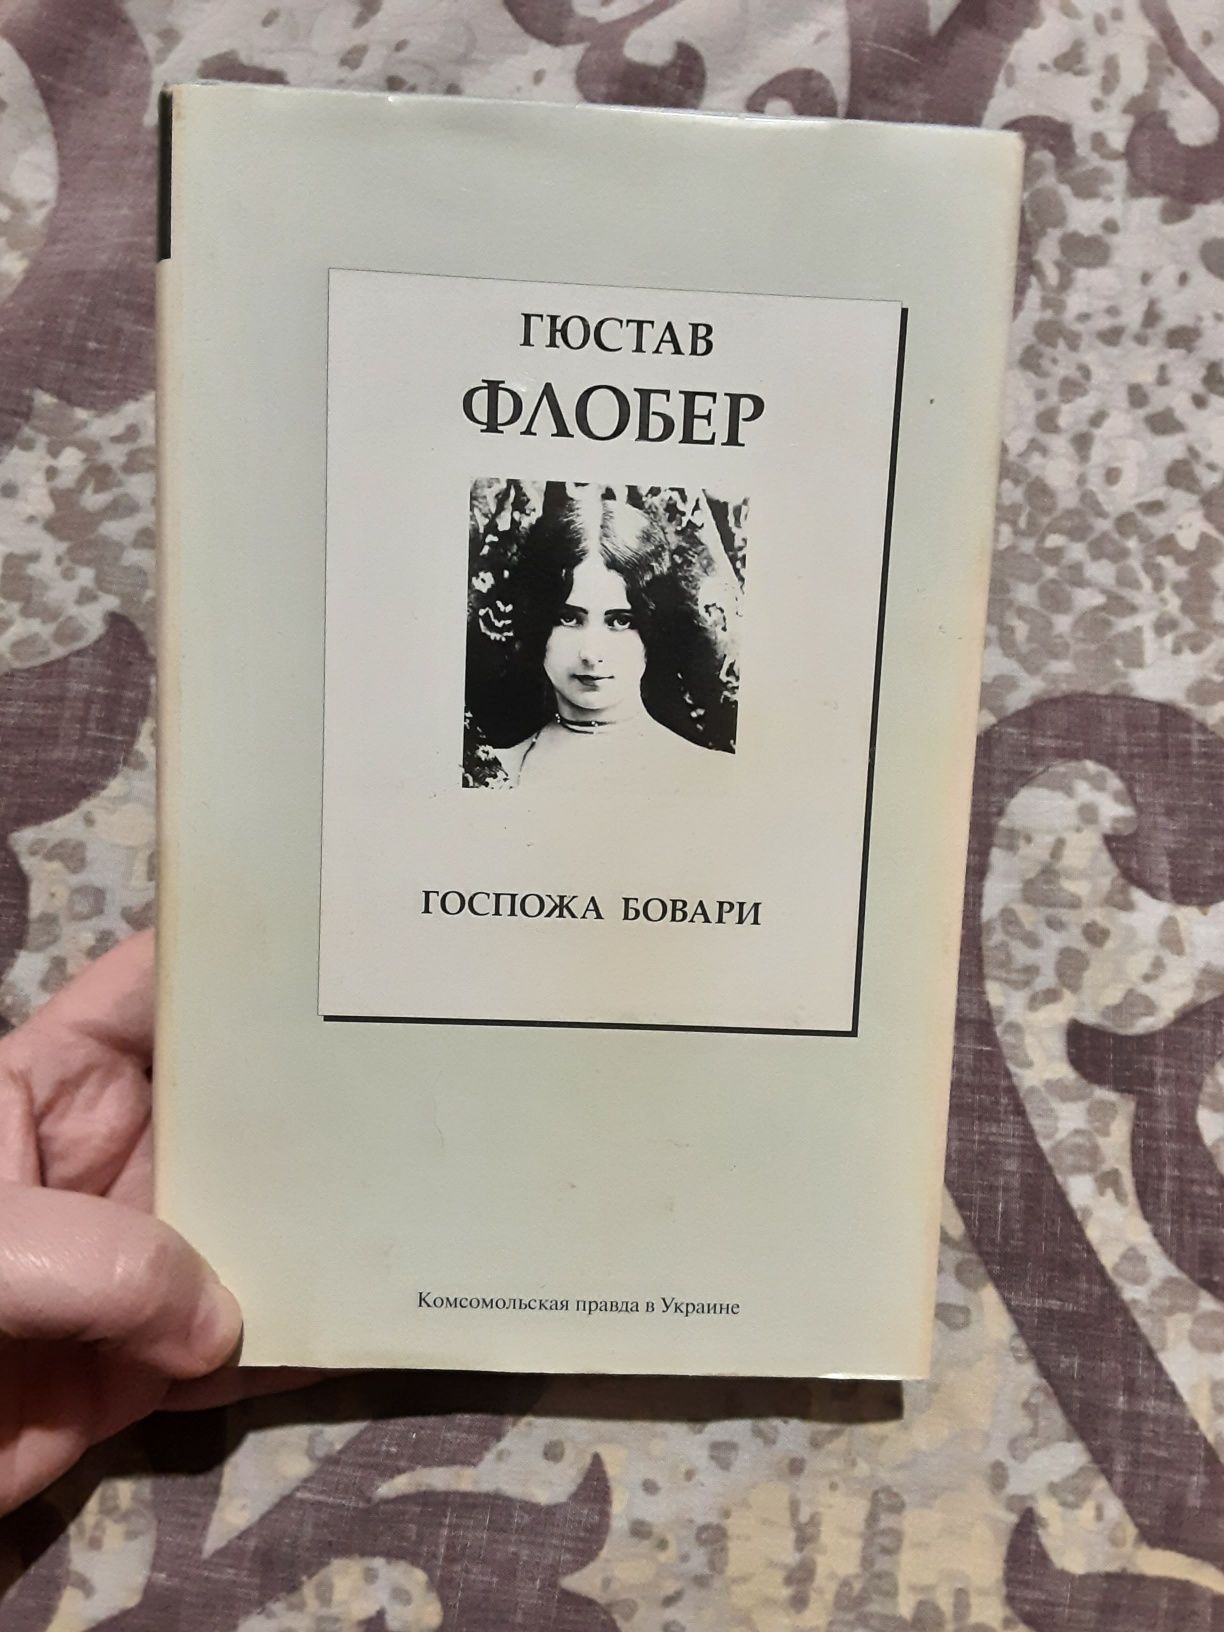 Роман Гюстав Флобер "Госпожа Бовари" / пані Боварі